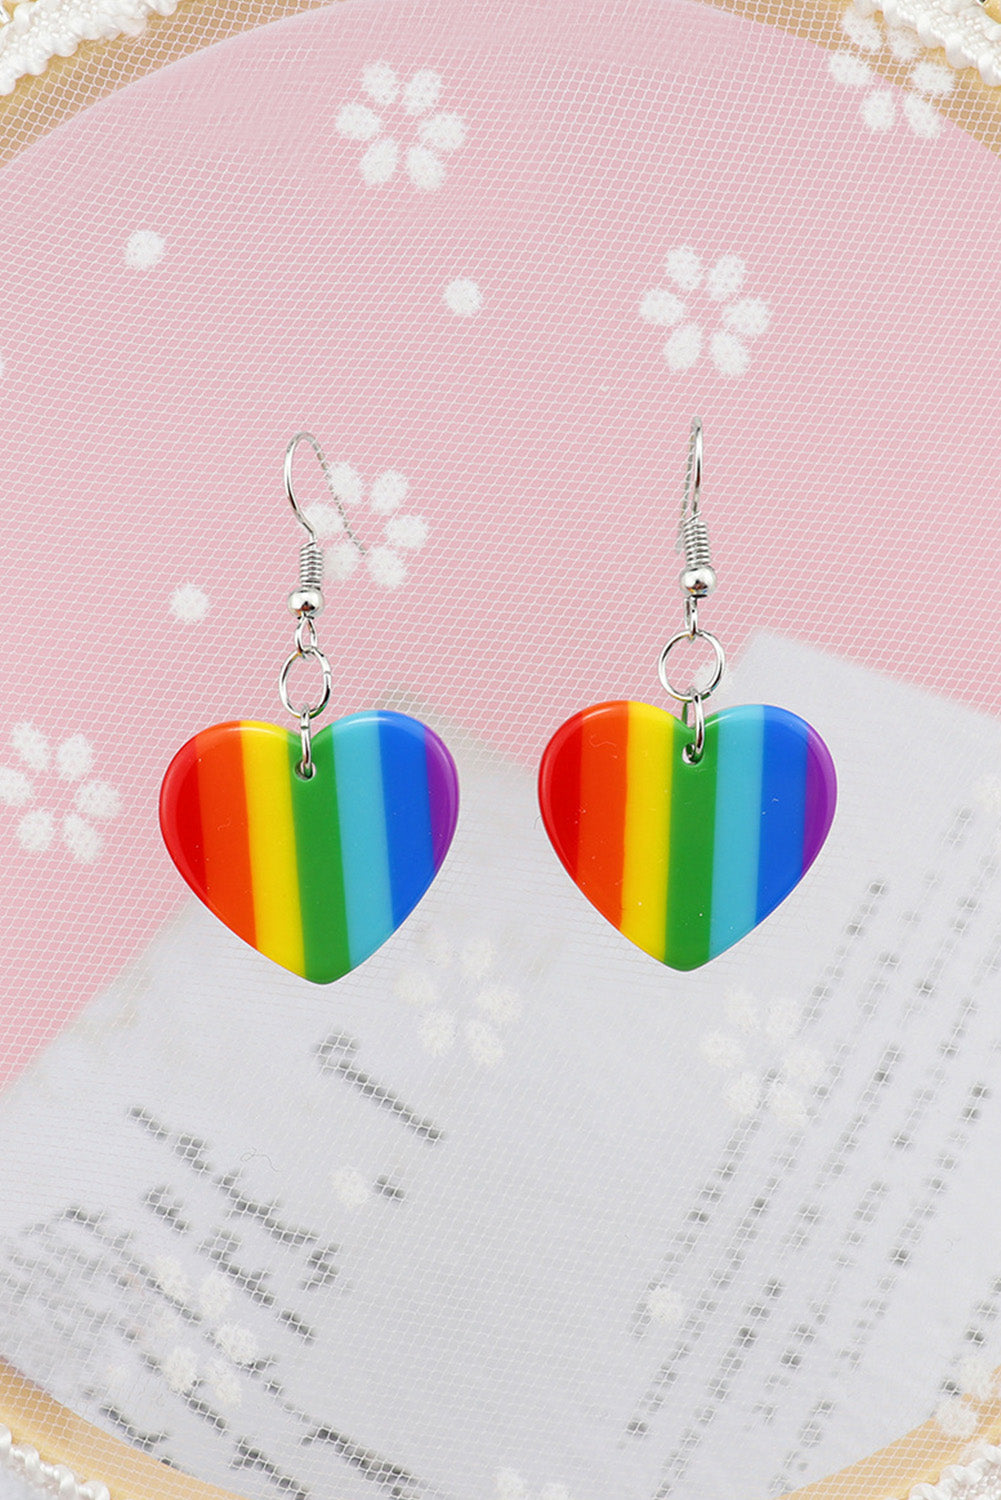 BH011017-22, Multicolor Heart Rainbow Earrings for Women Dangle Earrings Lesbian LGBT Pride Gifts